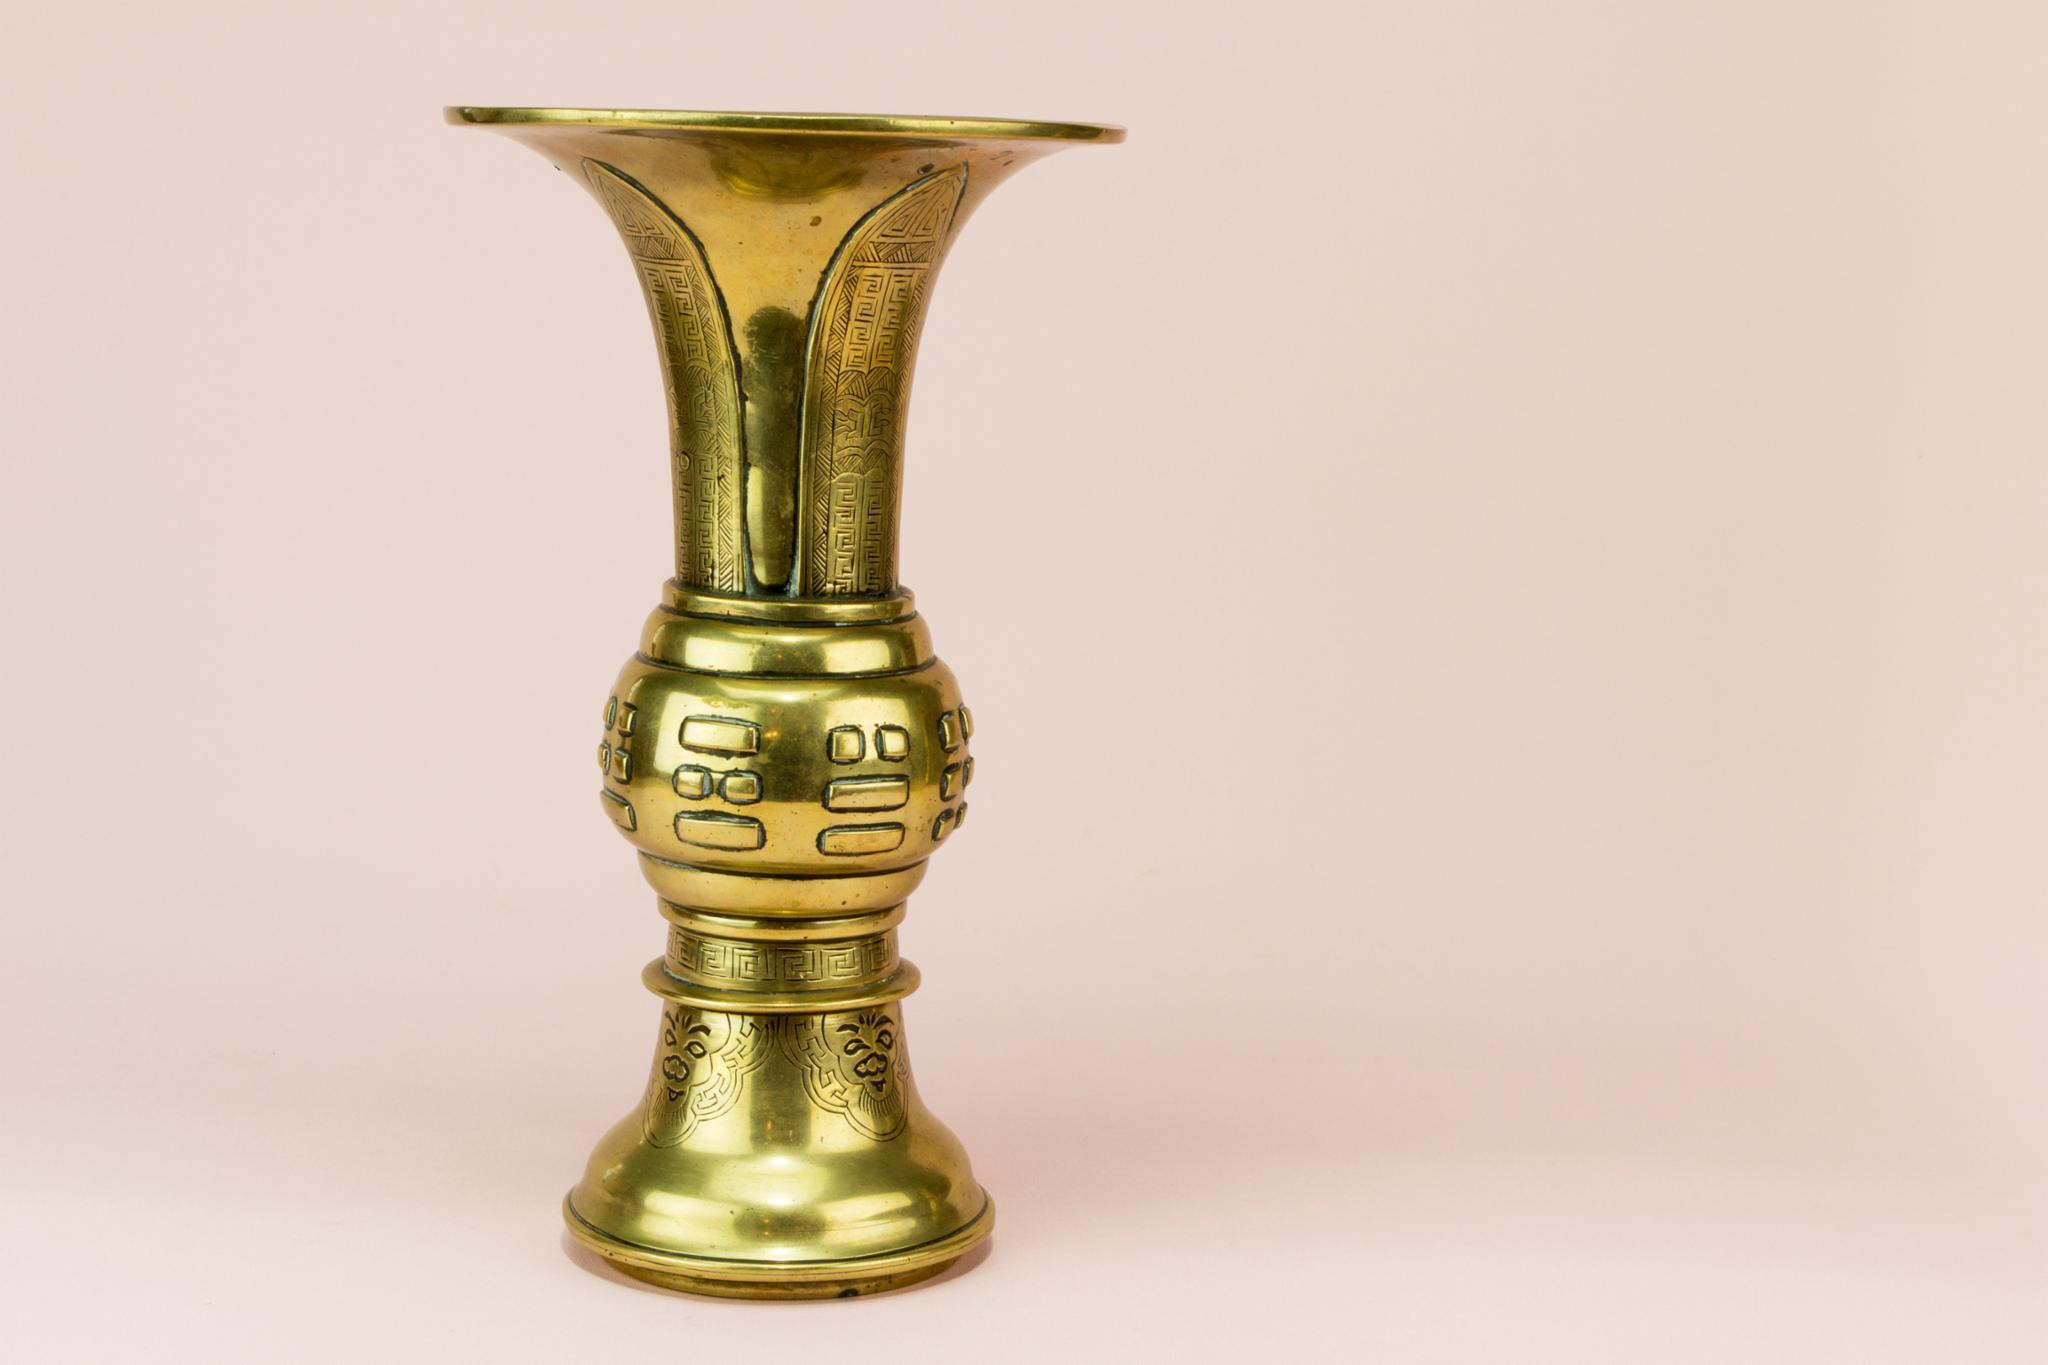 10 Recommended Vintage Brass Vase 2024 free download vintage brass vase of 2 gu shaped brass vases chinese 19th century late 19th century inside 2 gu shaped brass vases chinese 19th century 1